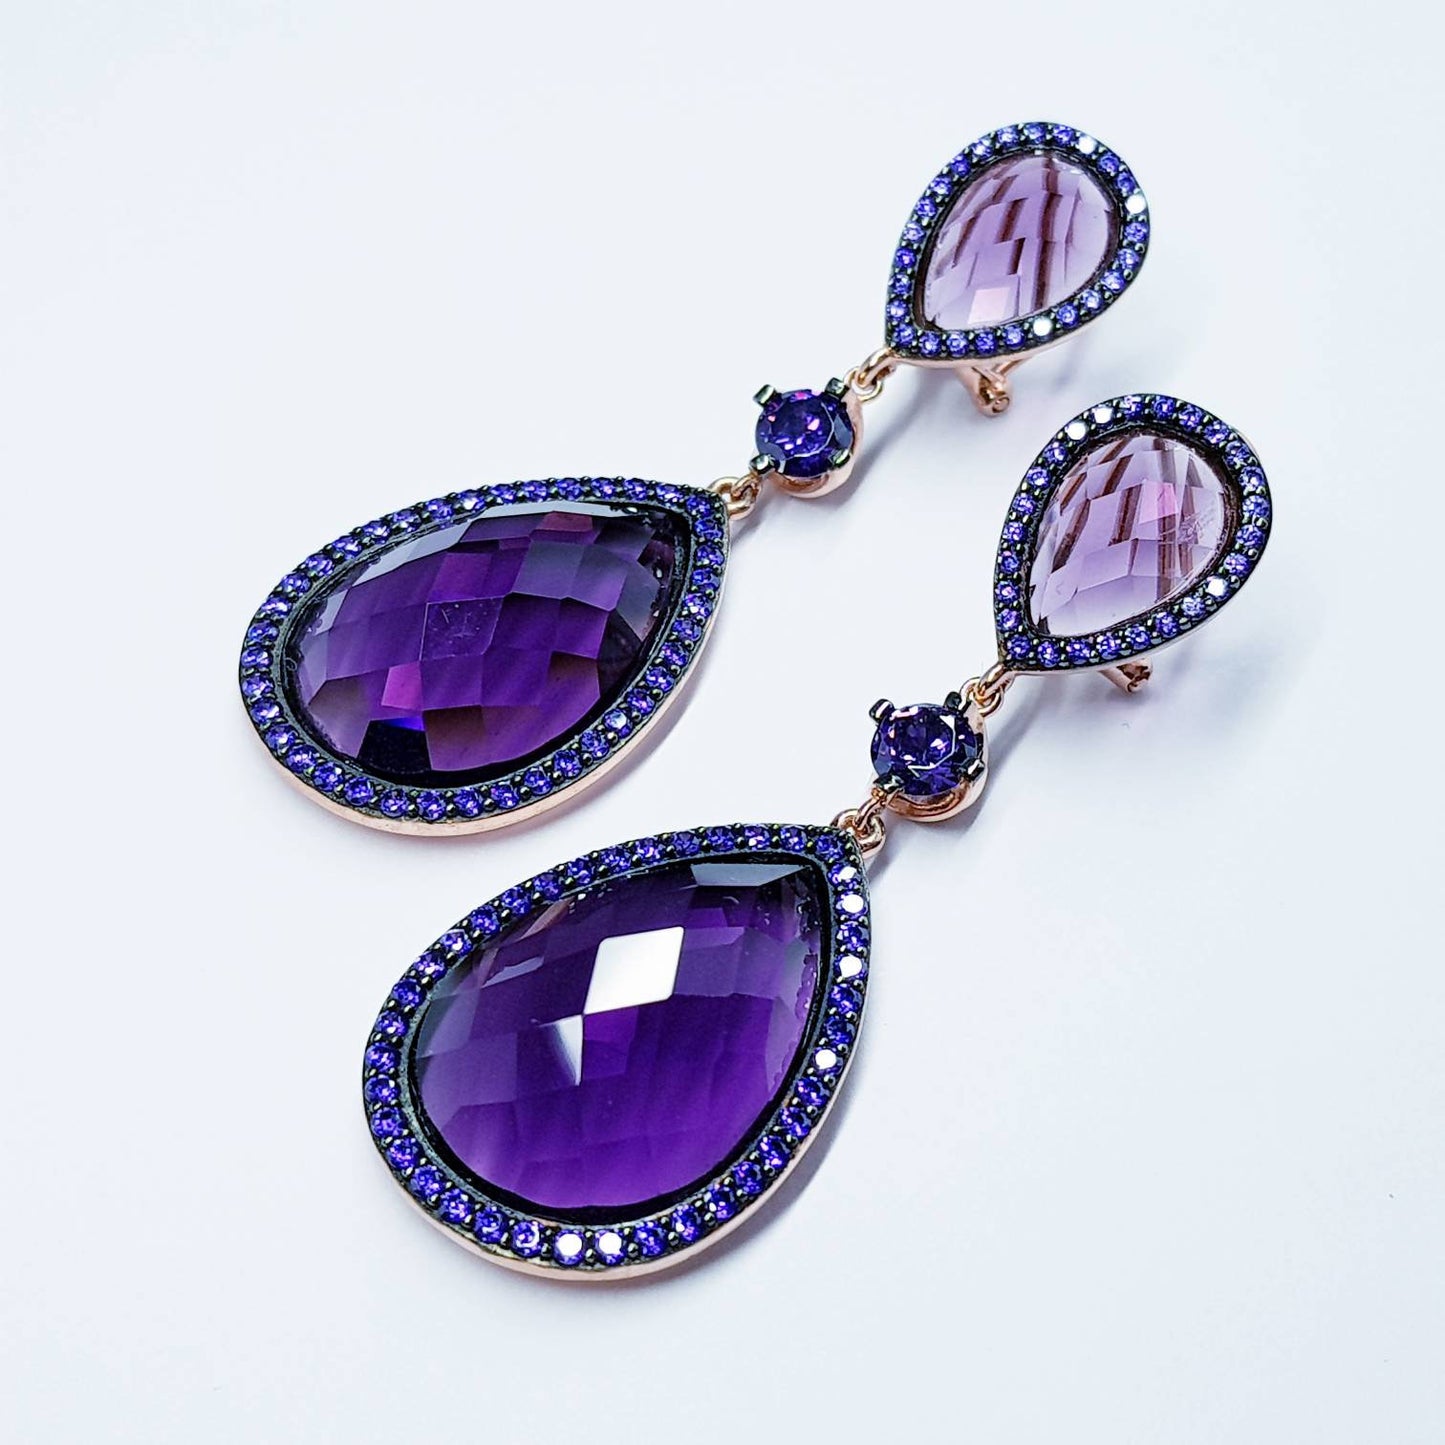 Large purple Earrings, Statement Earrings, Glamourous Jewelry, Rose gold Earrings, Rockstar Jewelry